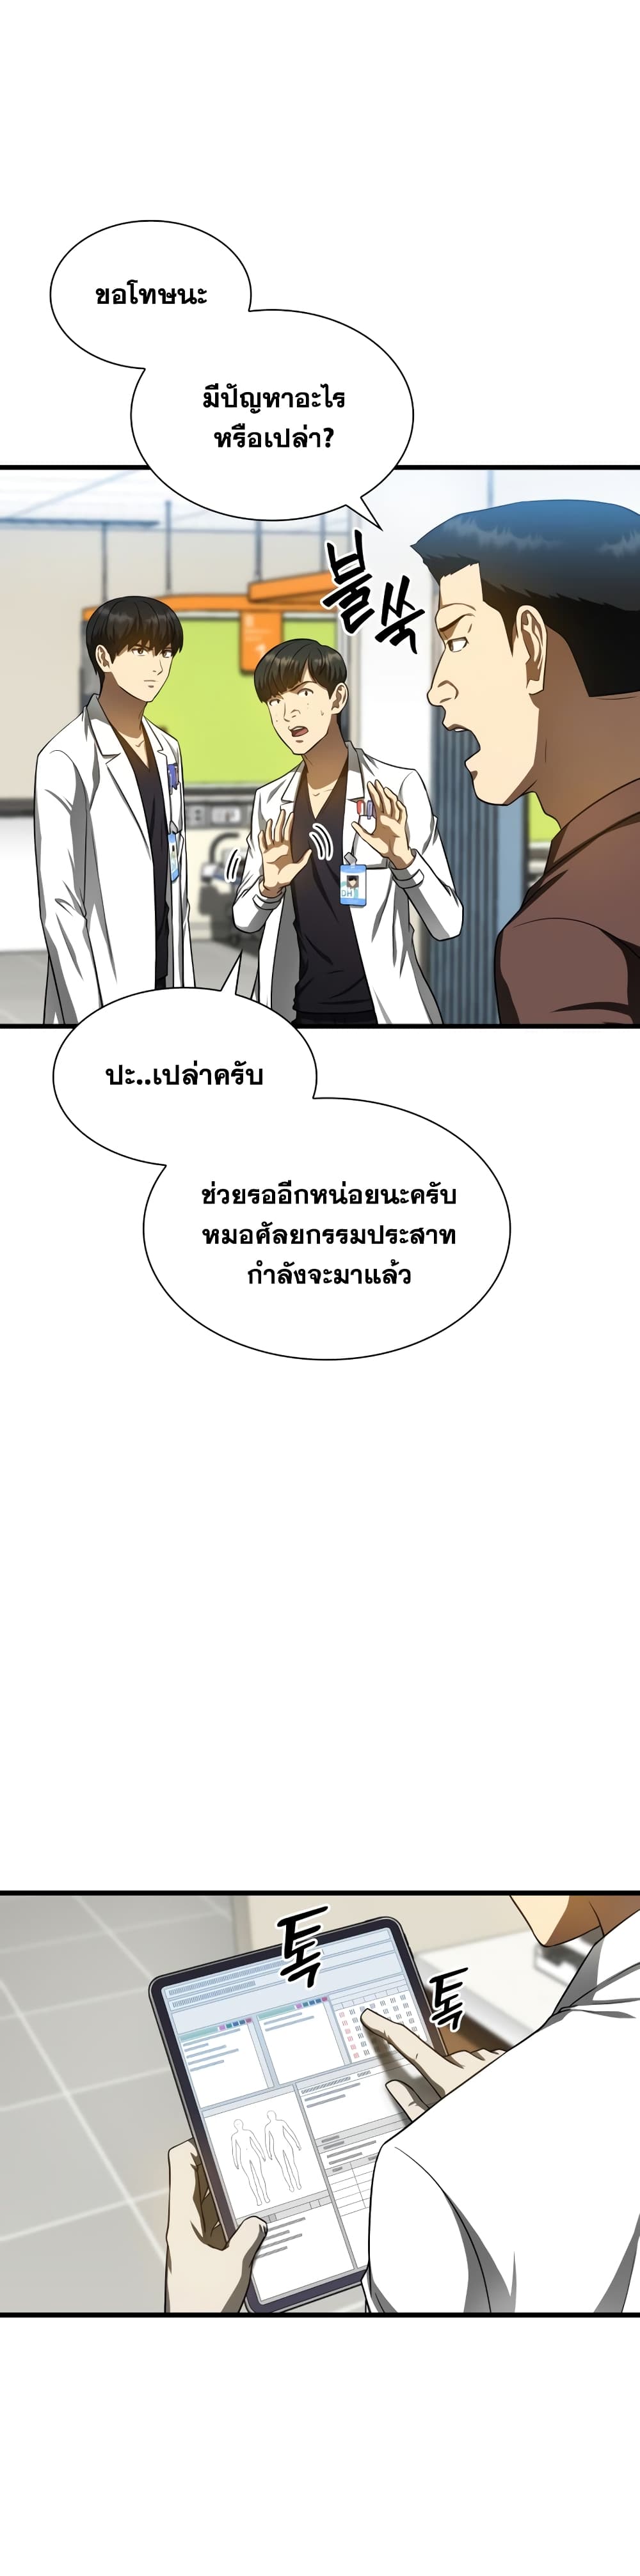 Perfect Surgeon 36 แปลไทย